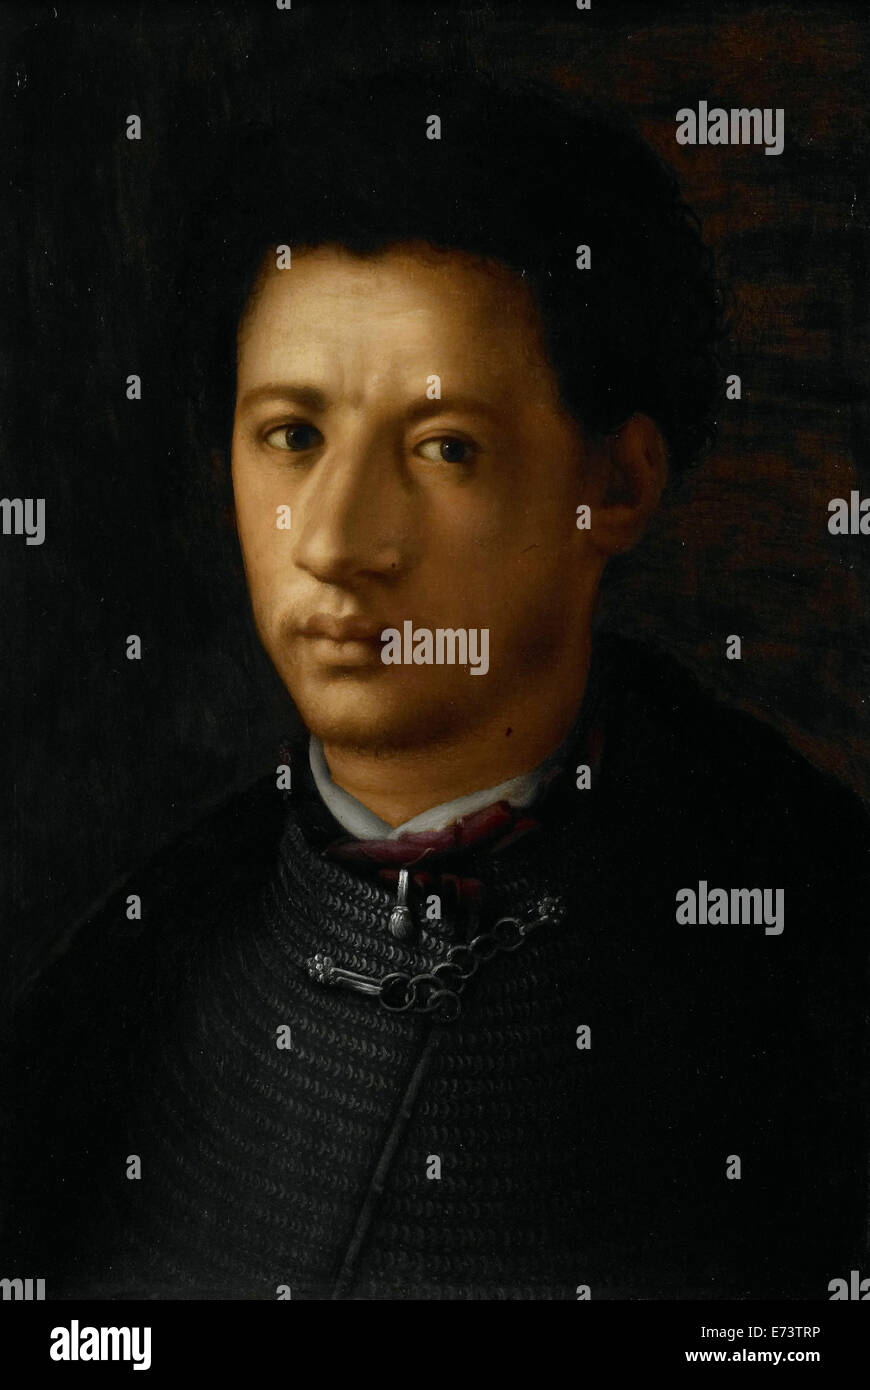 Alessandro de' Medici (1510-37) - por el artista desconocido, 1525 - 1599 Foto de stock